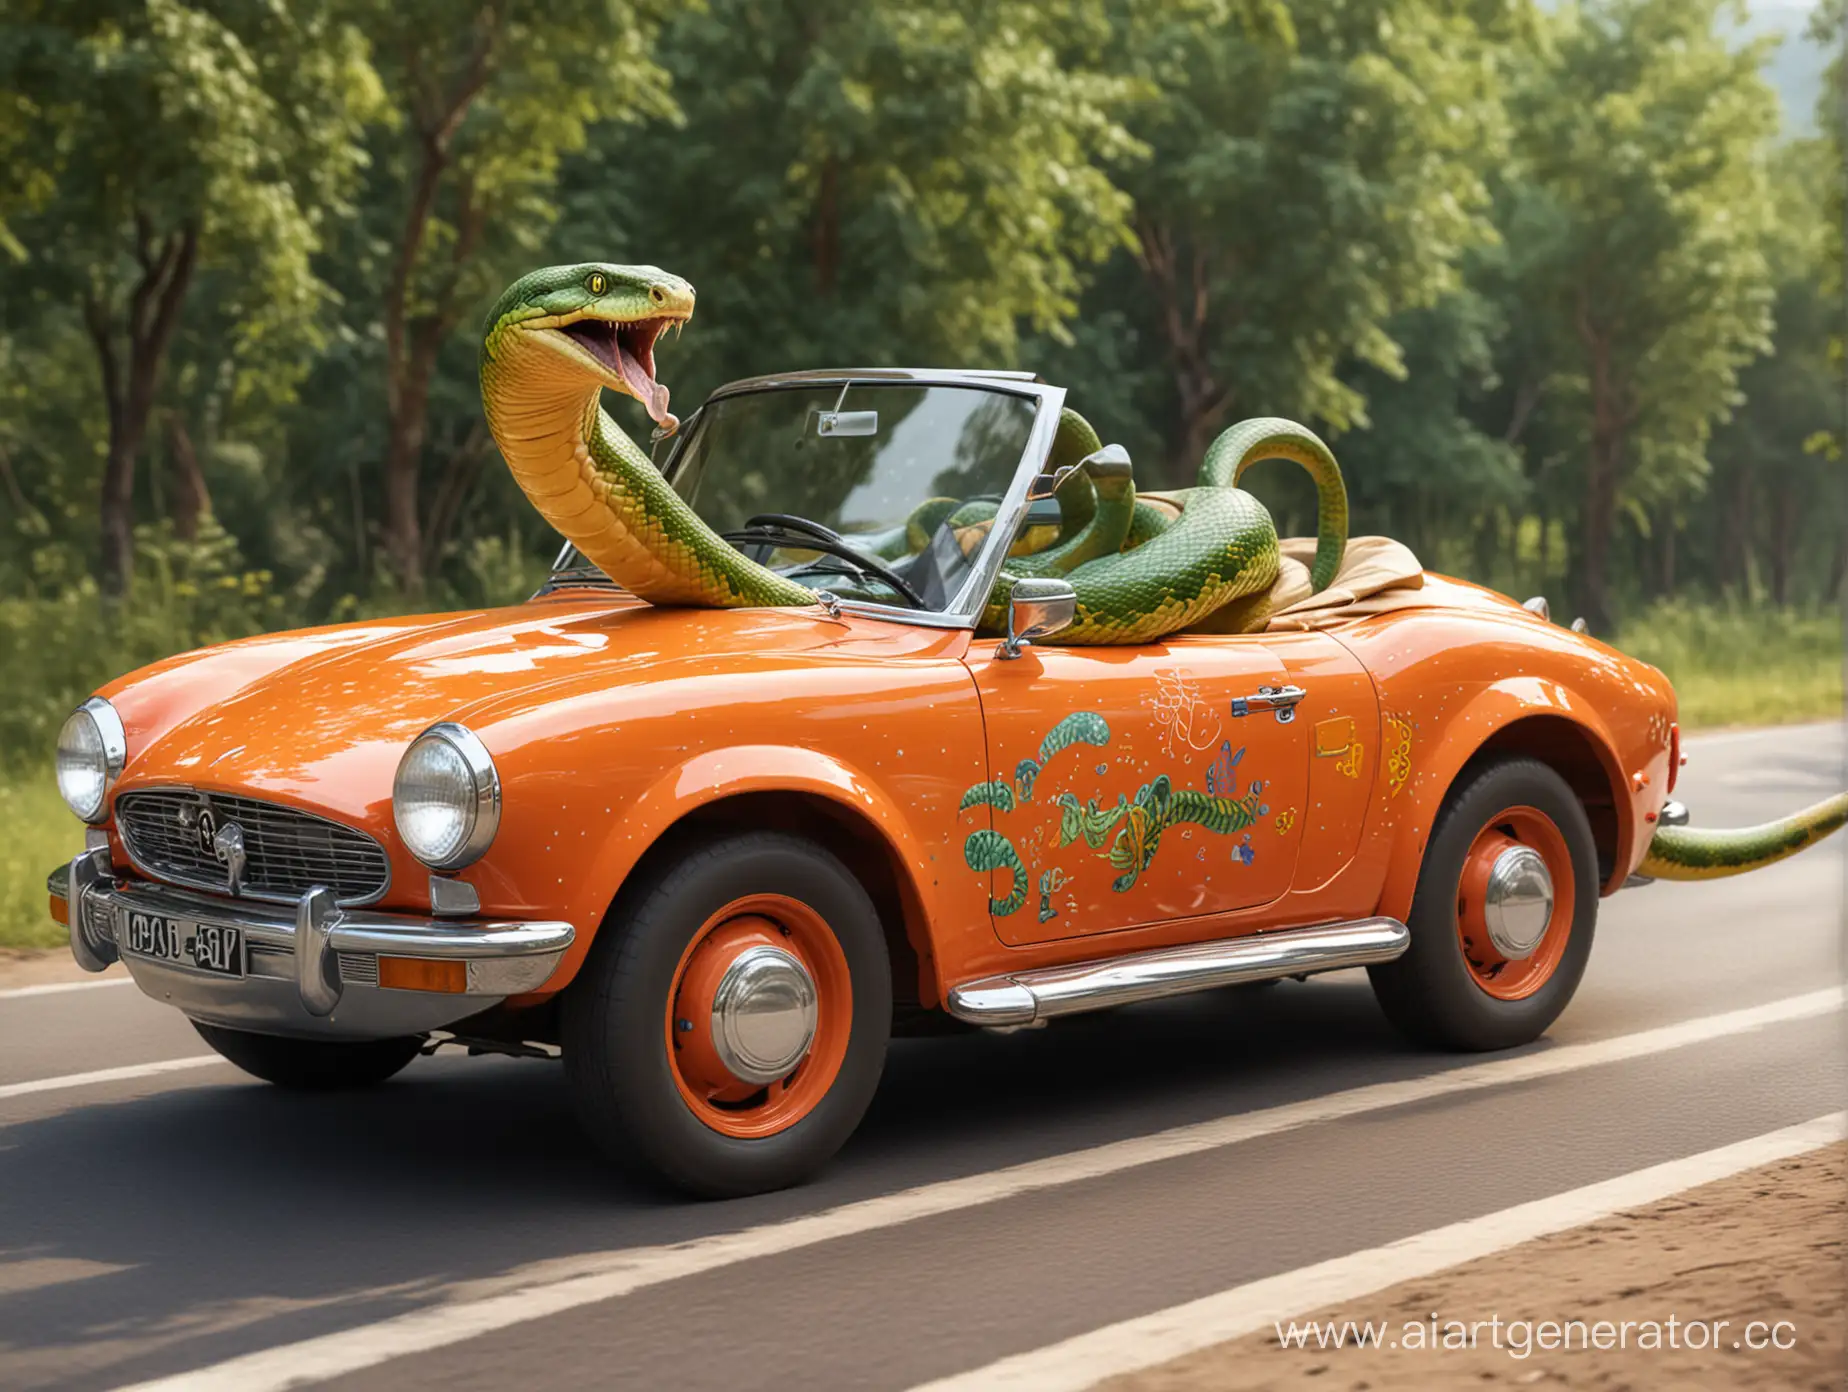 змея едет на машине веселая
